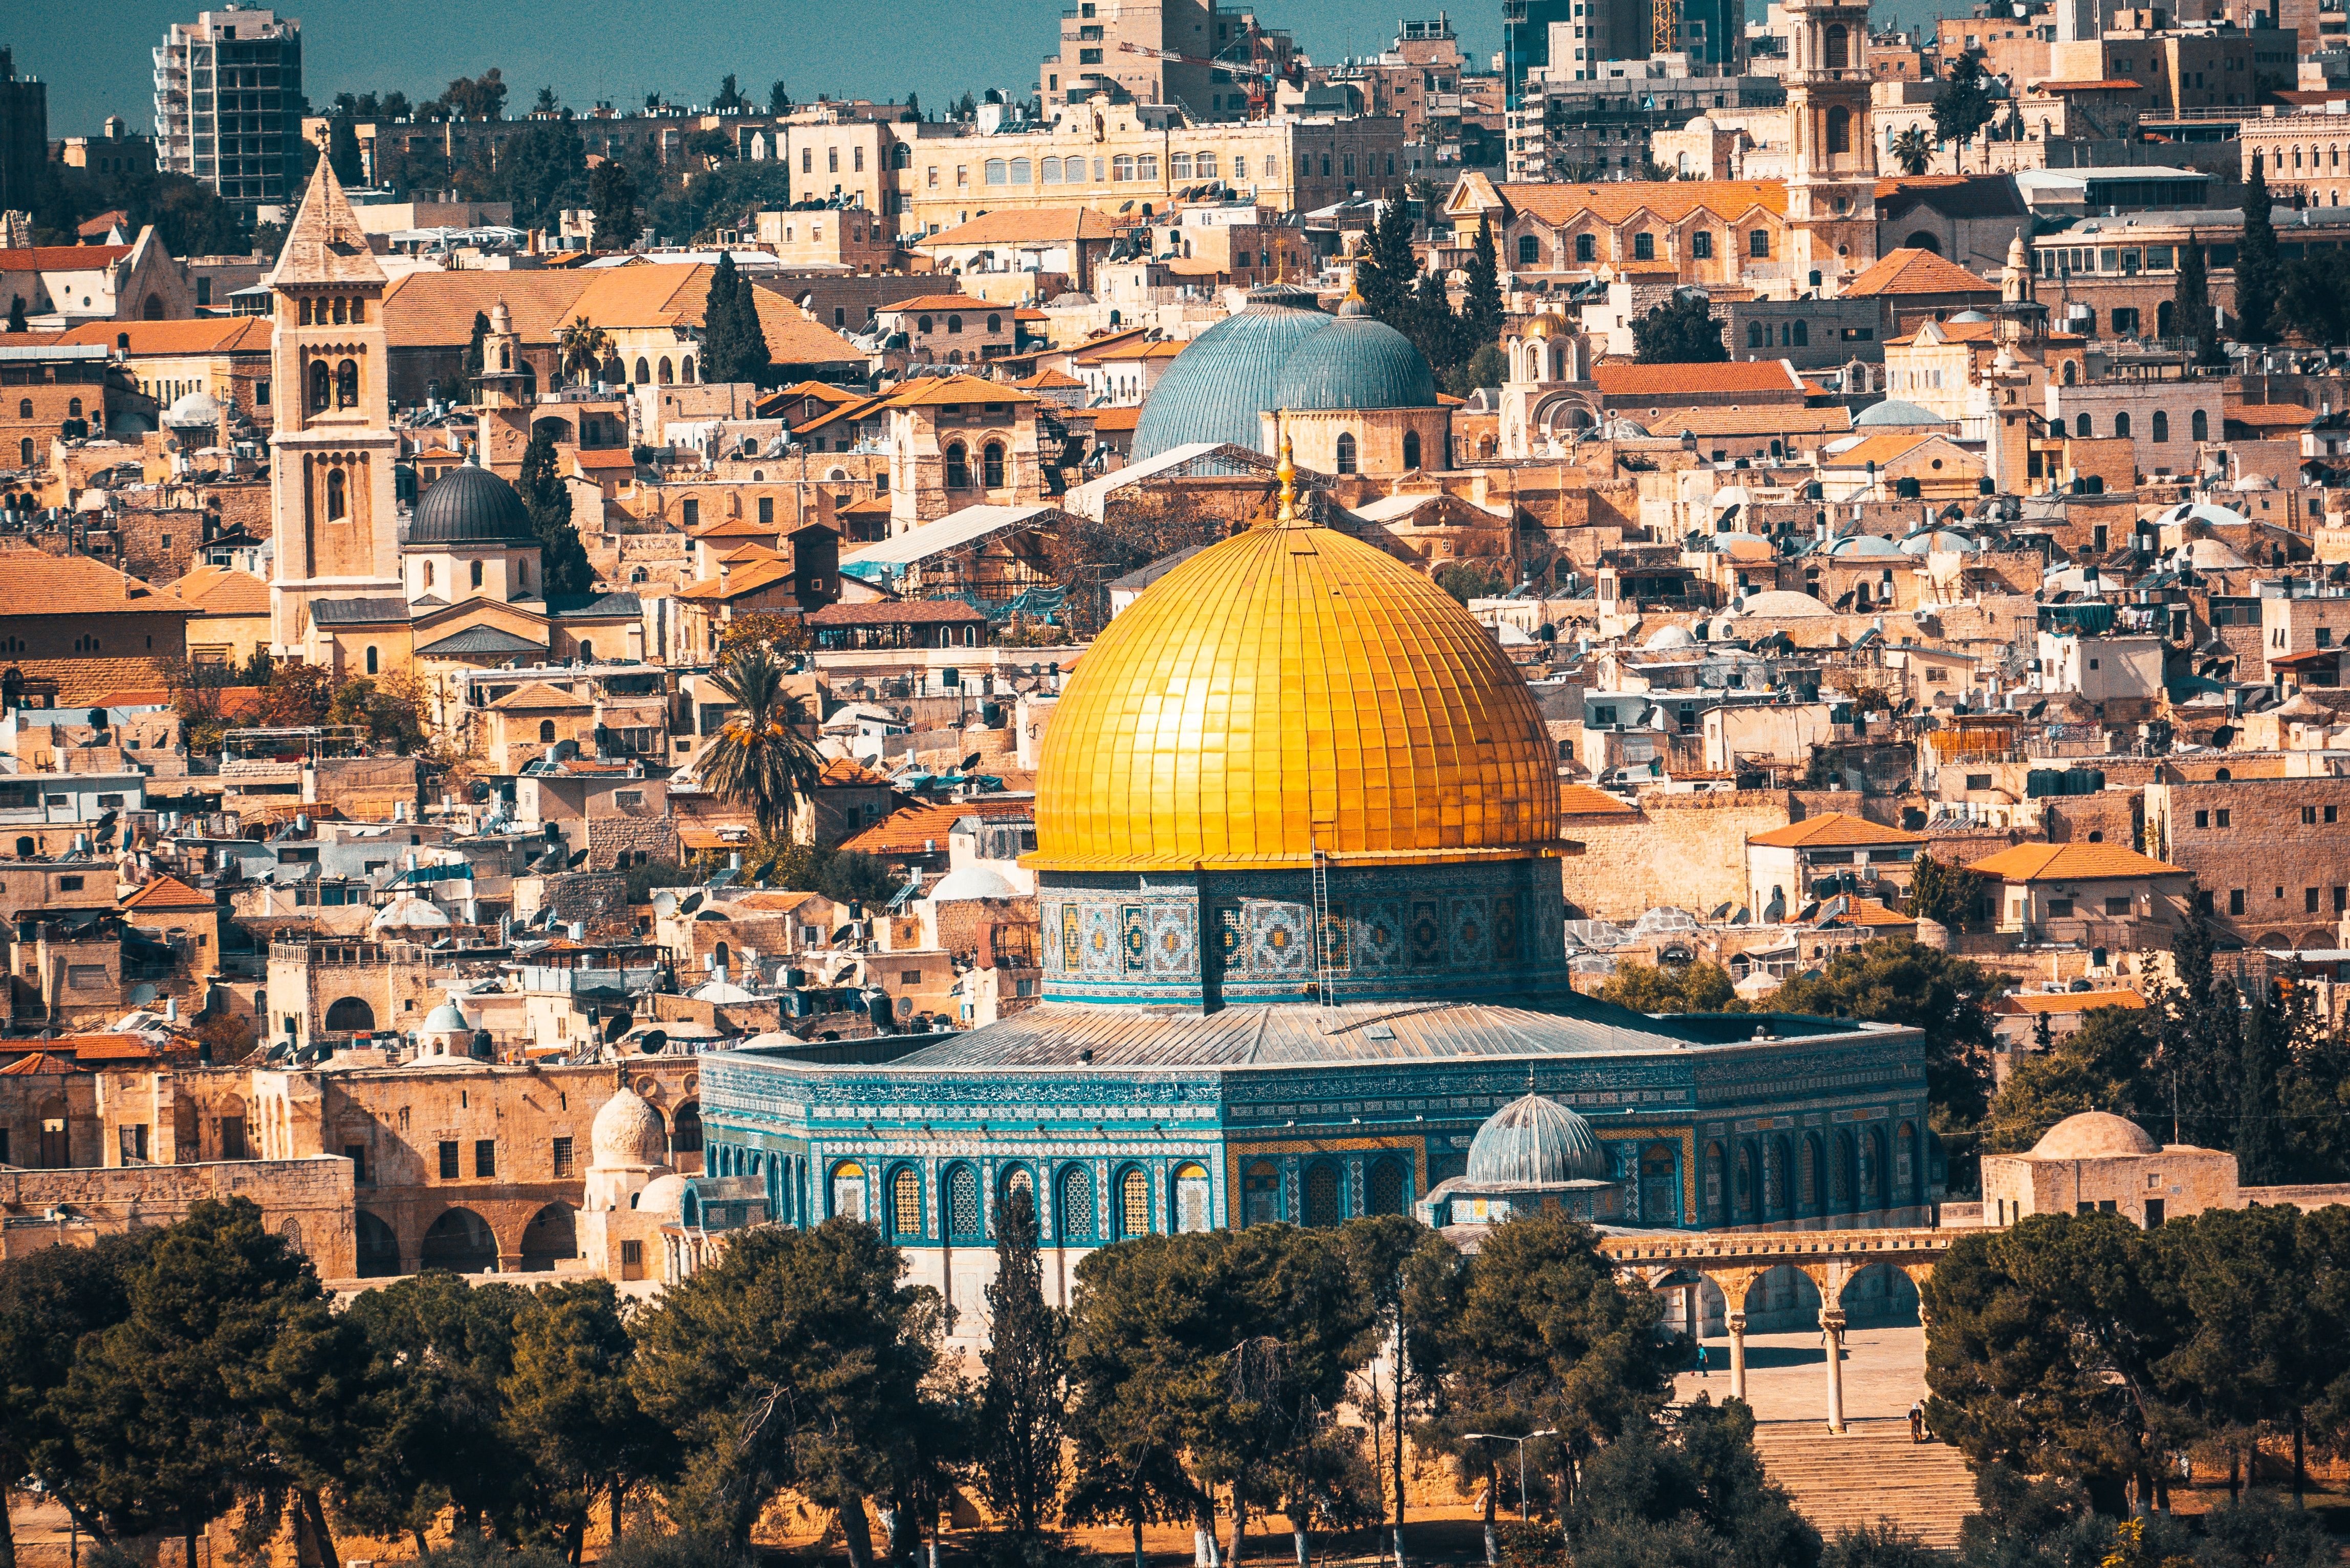 Όρος ναού - χρυσός θόλος του τζαμιού βράχου στην παλιά πόλη της Ιερουσαλήμ, Ισραήλ